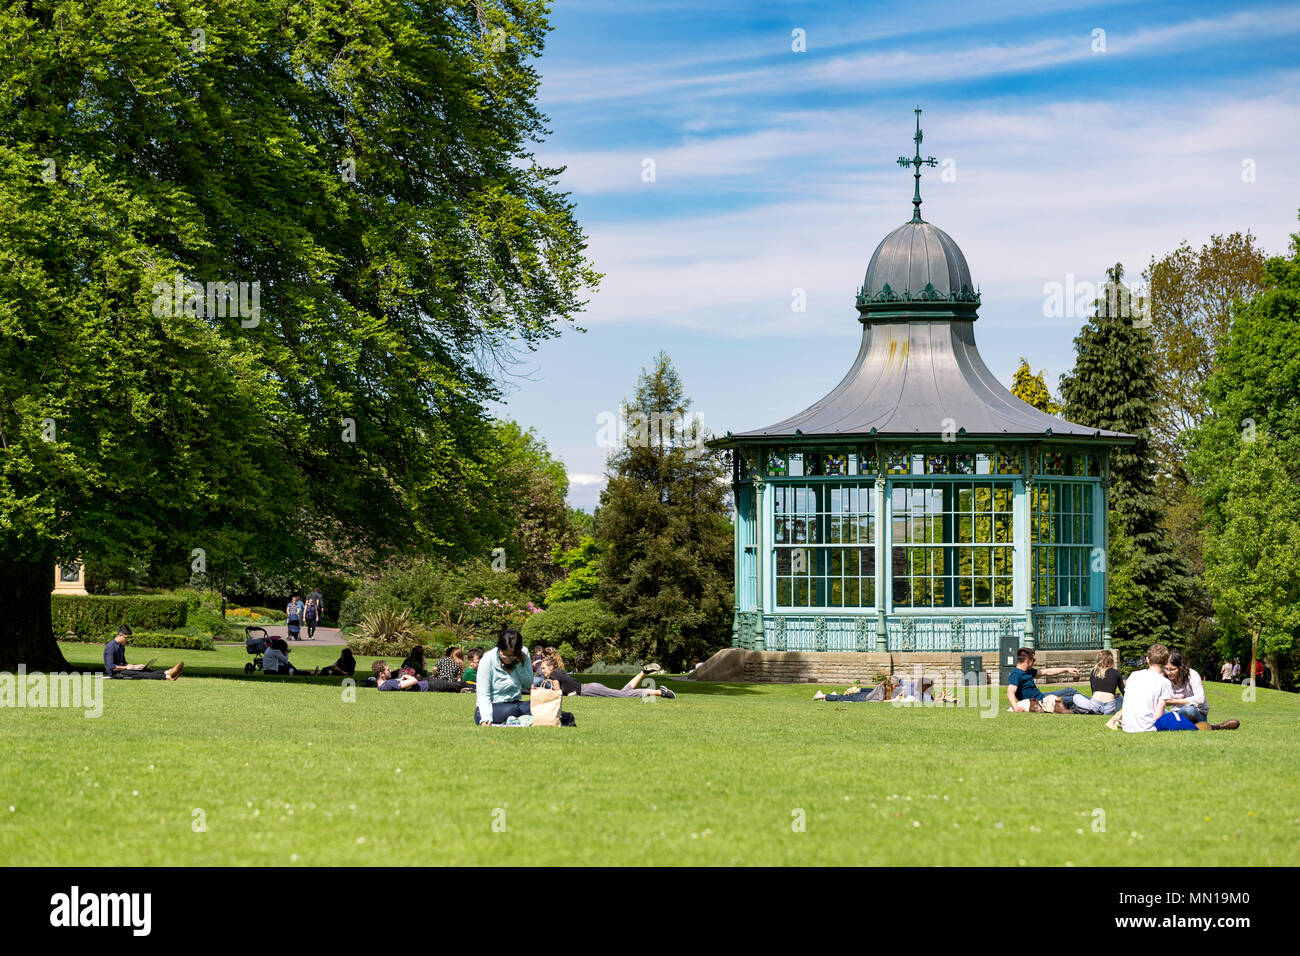 Die Menschen saßen in Weston Park, Sheffield, UK an einem sonnigen Tag, neben einem alten Musikpavillon. Stockfoto